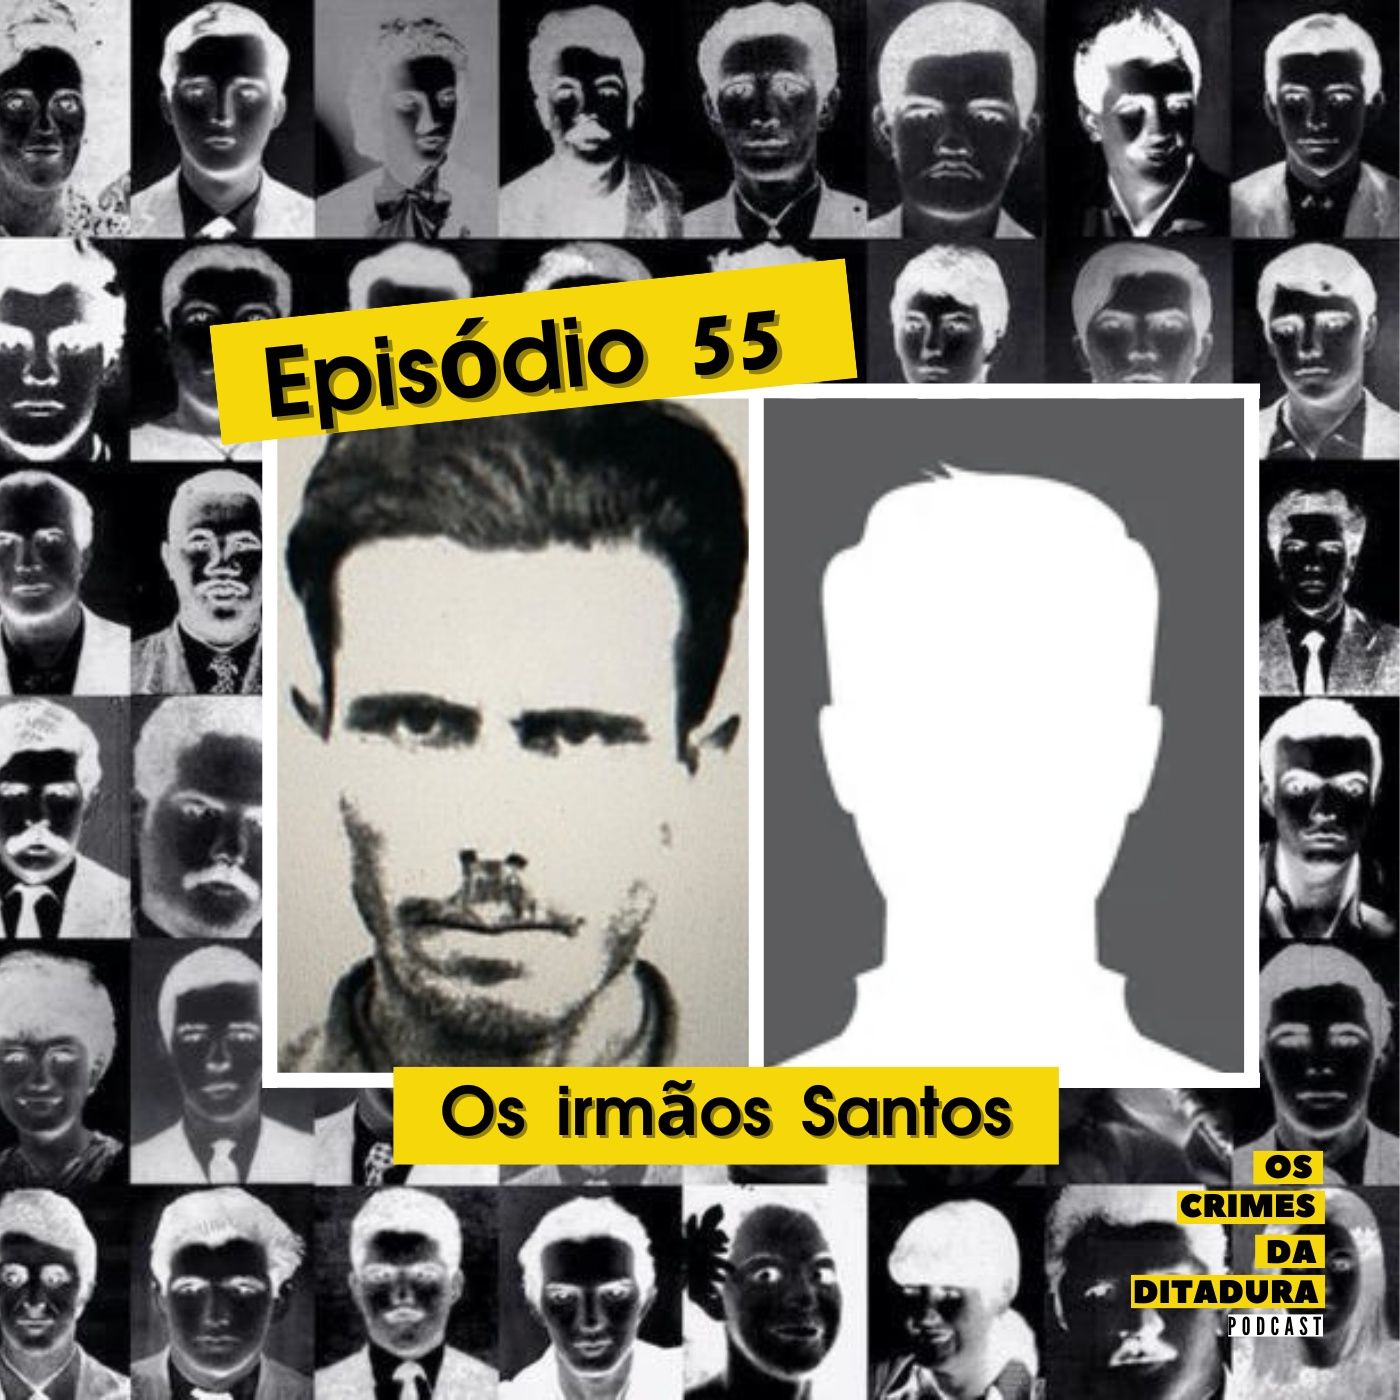 Ep 55 - Os irmãos Santos